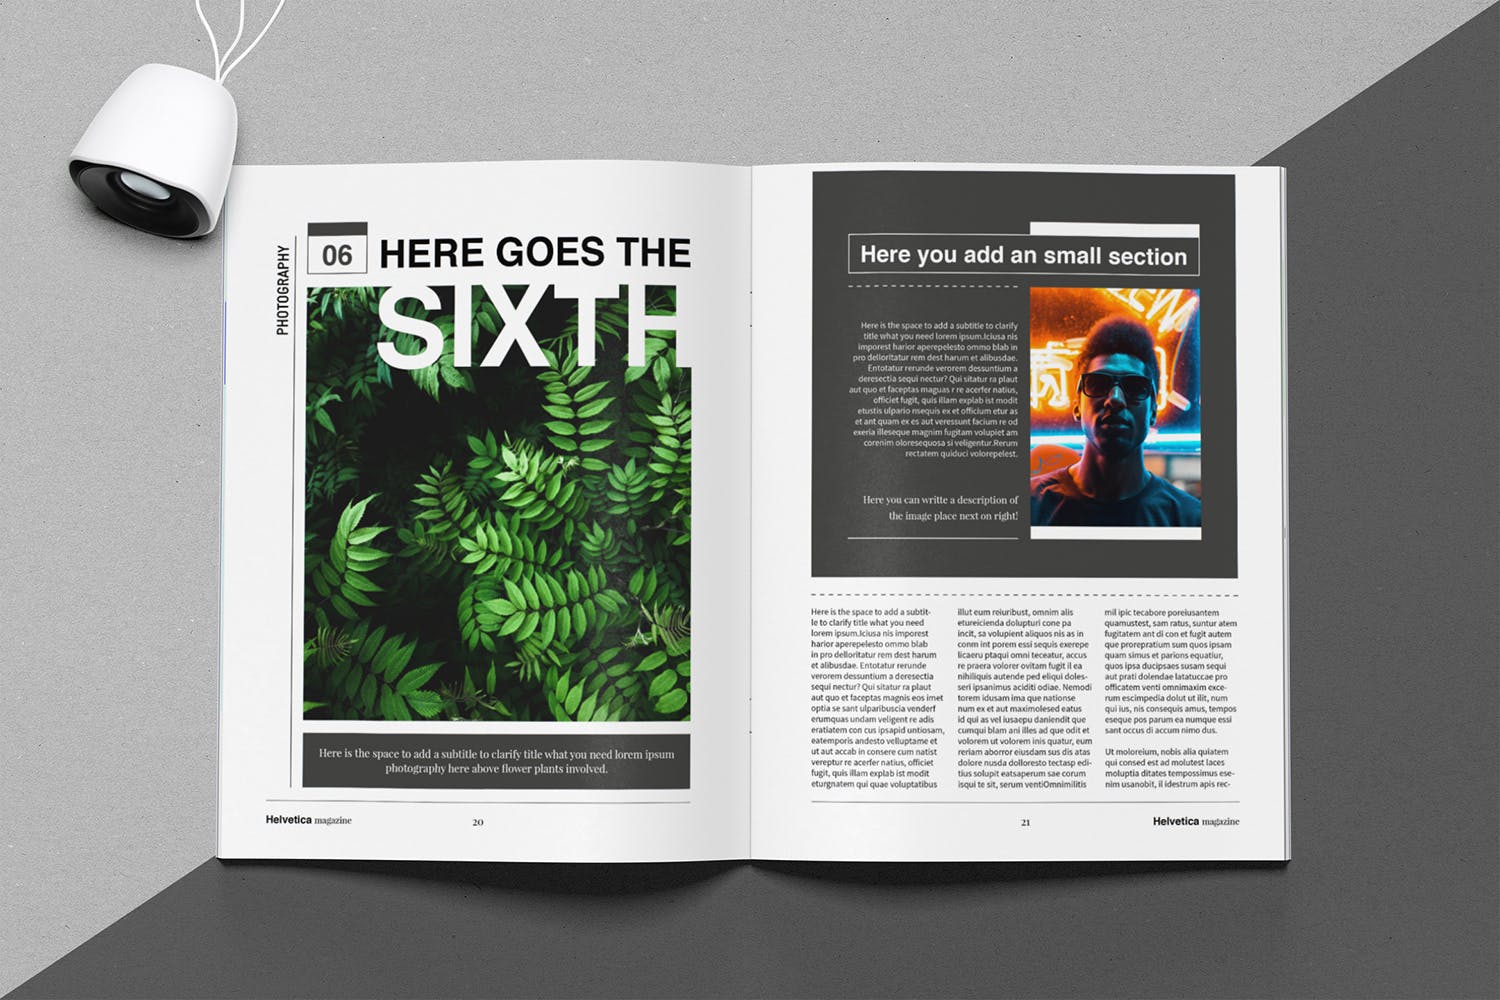 时尚行业产品评测杂志Indesign模板下载 Helvetica Magazine Indesign Template插图10